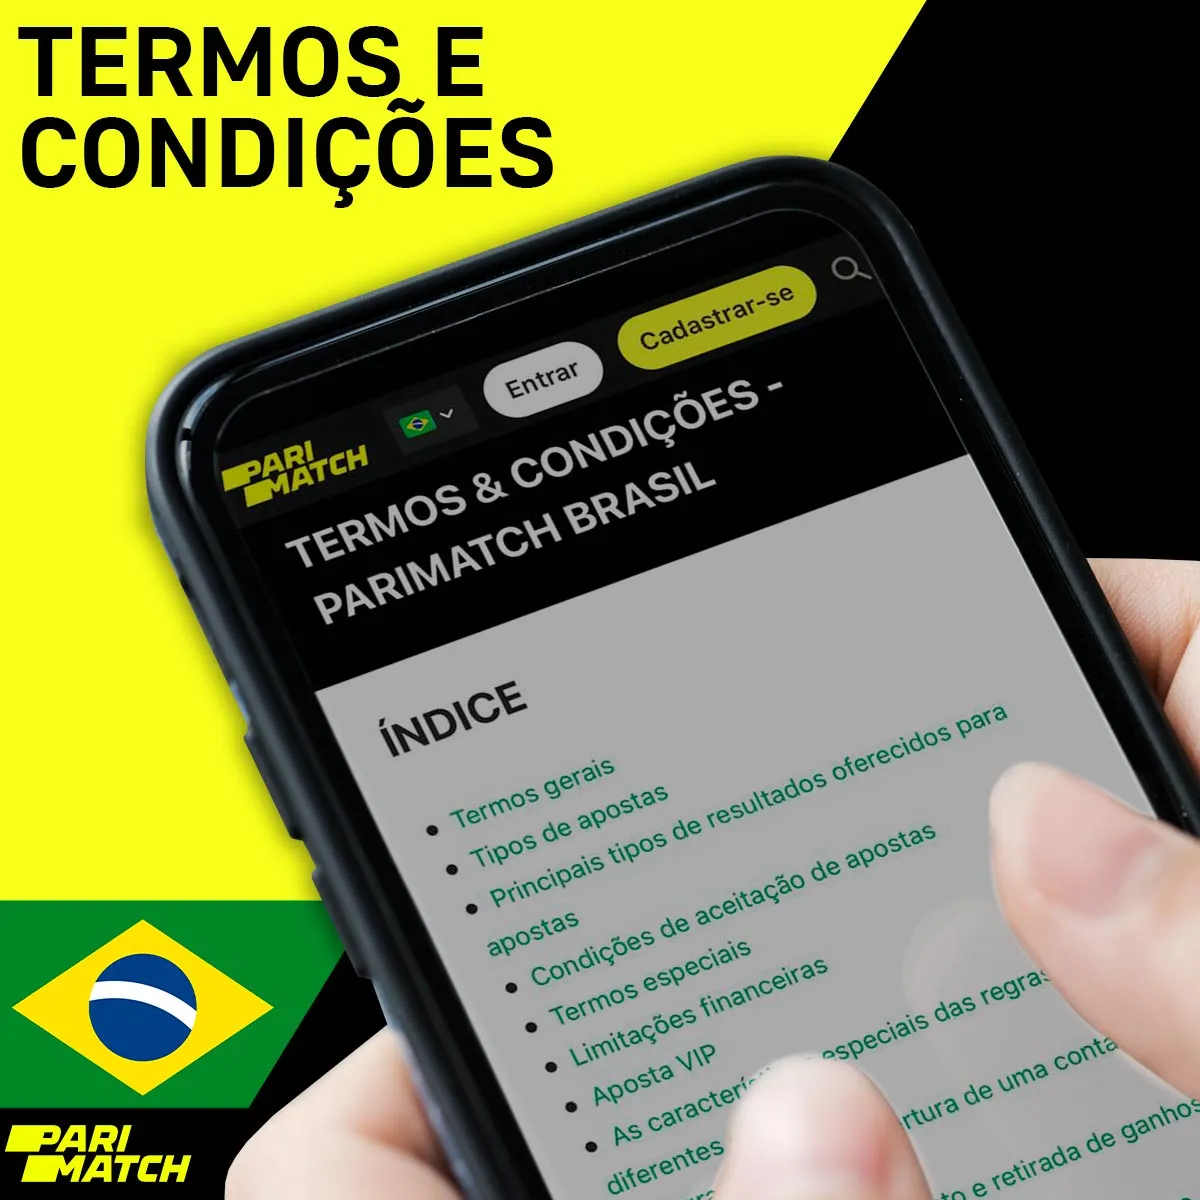 Condições e requisitos da casa de apostas Parimatch no Brasil